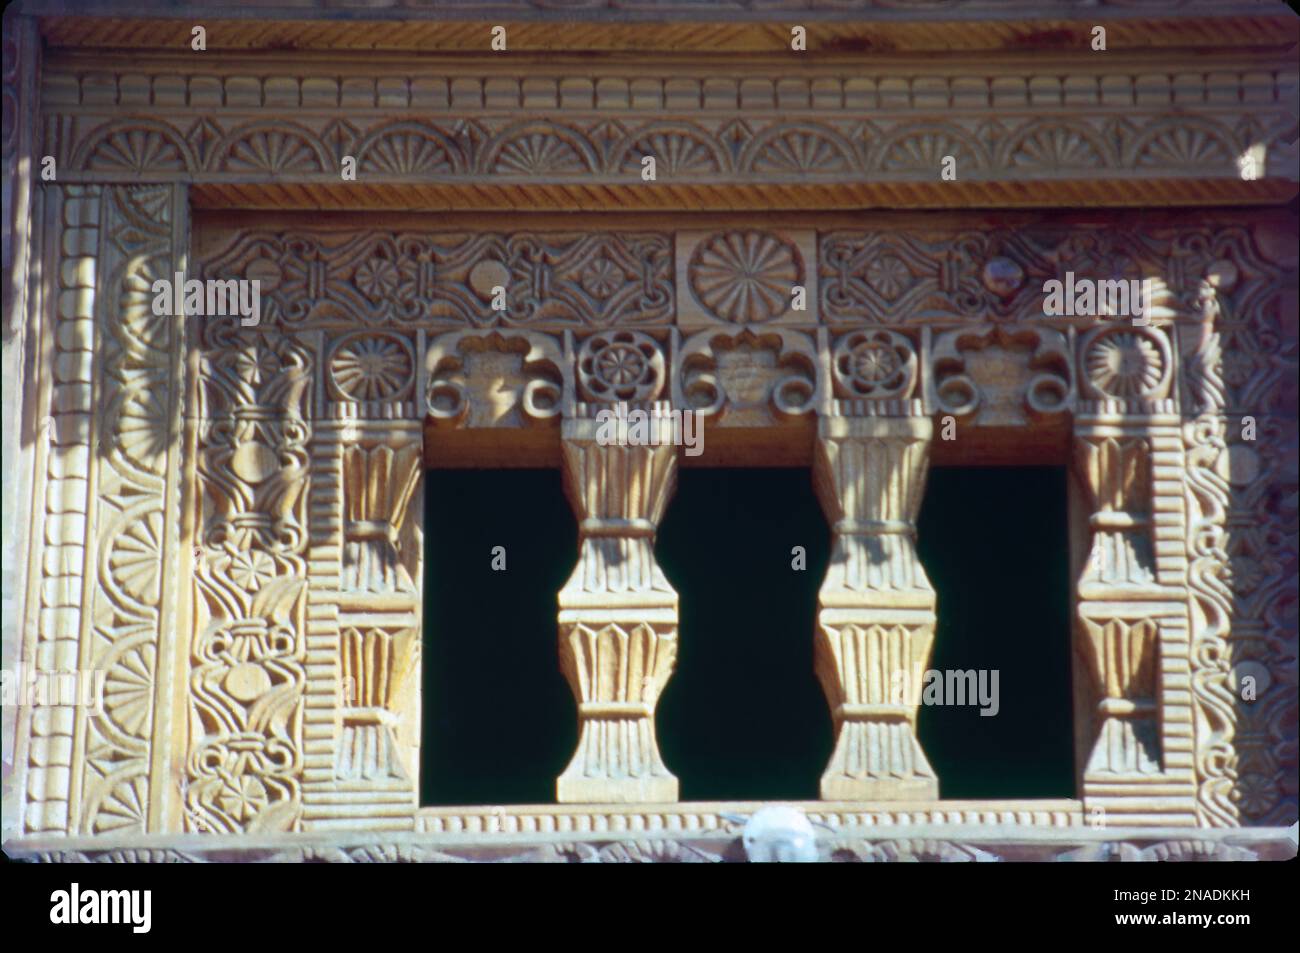 Questo tempio è dedicato a Gayatri Mata, una divinità molto venerata ed è un tempio antico. Il Tempio di Gayatri di Manali è uno dei più famosi e famosi templi antichi di Himachal Pradesh. Si trova a 6 km nella parte meridionale di Manali. Foto Stock